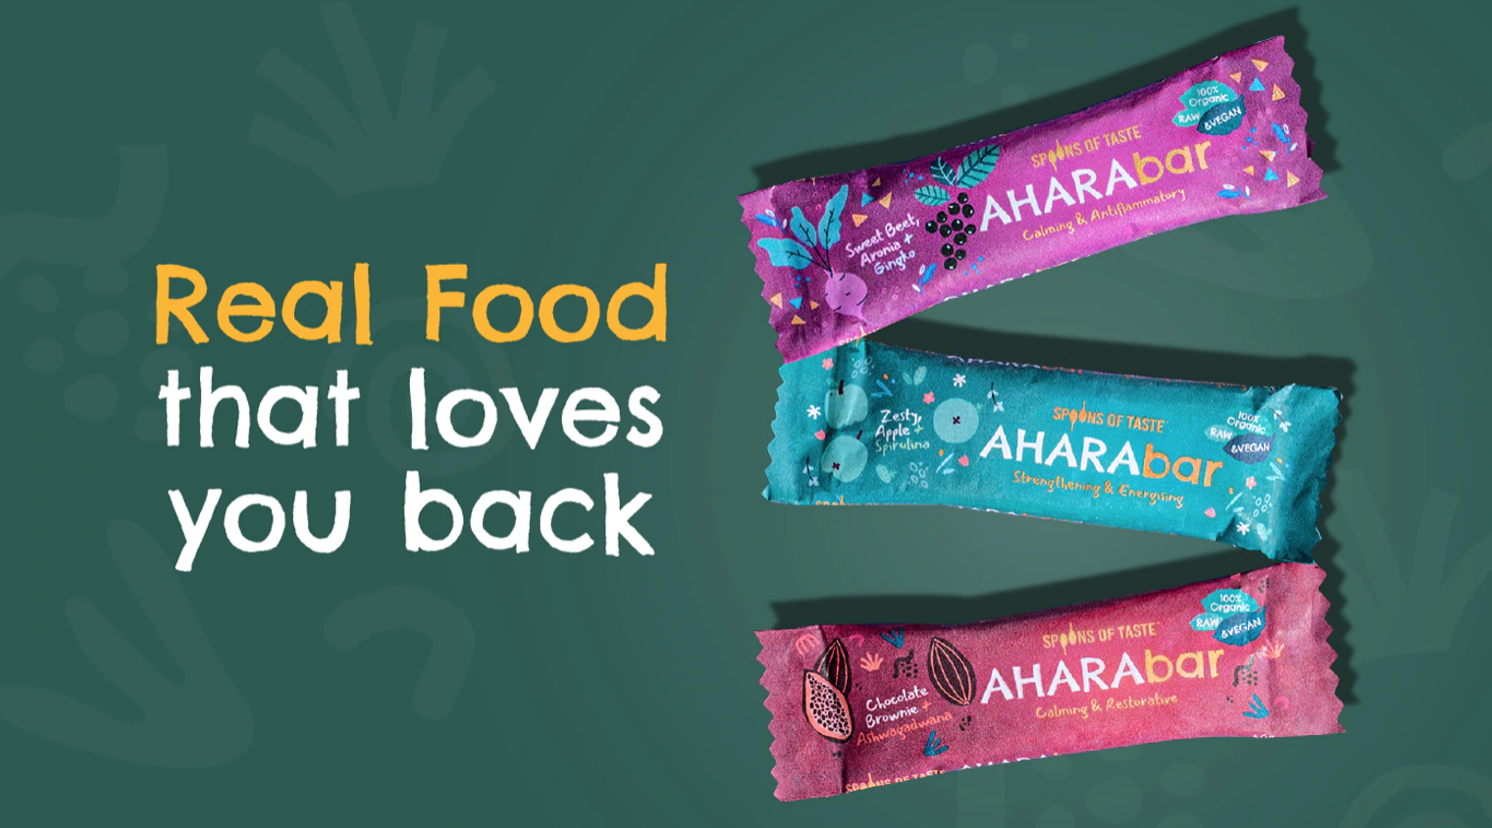 AHARAbar by Spoons of Taste snack bars